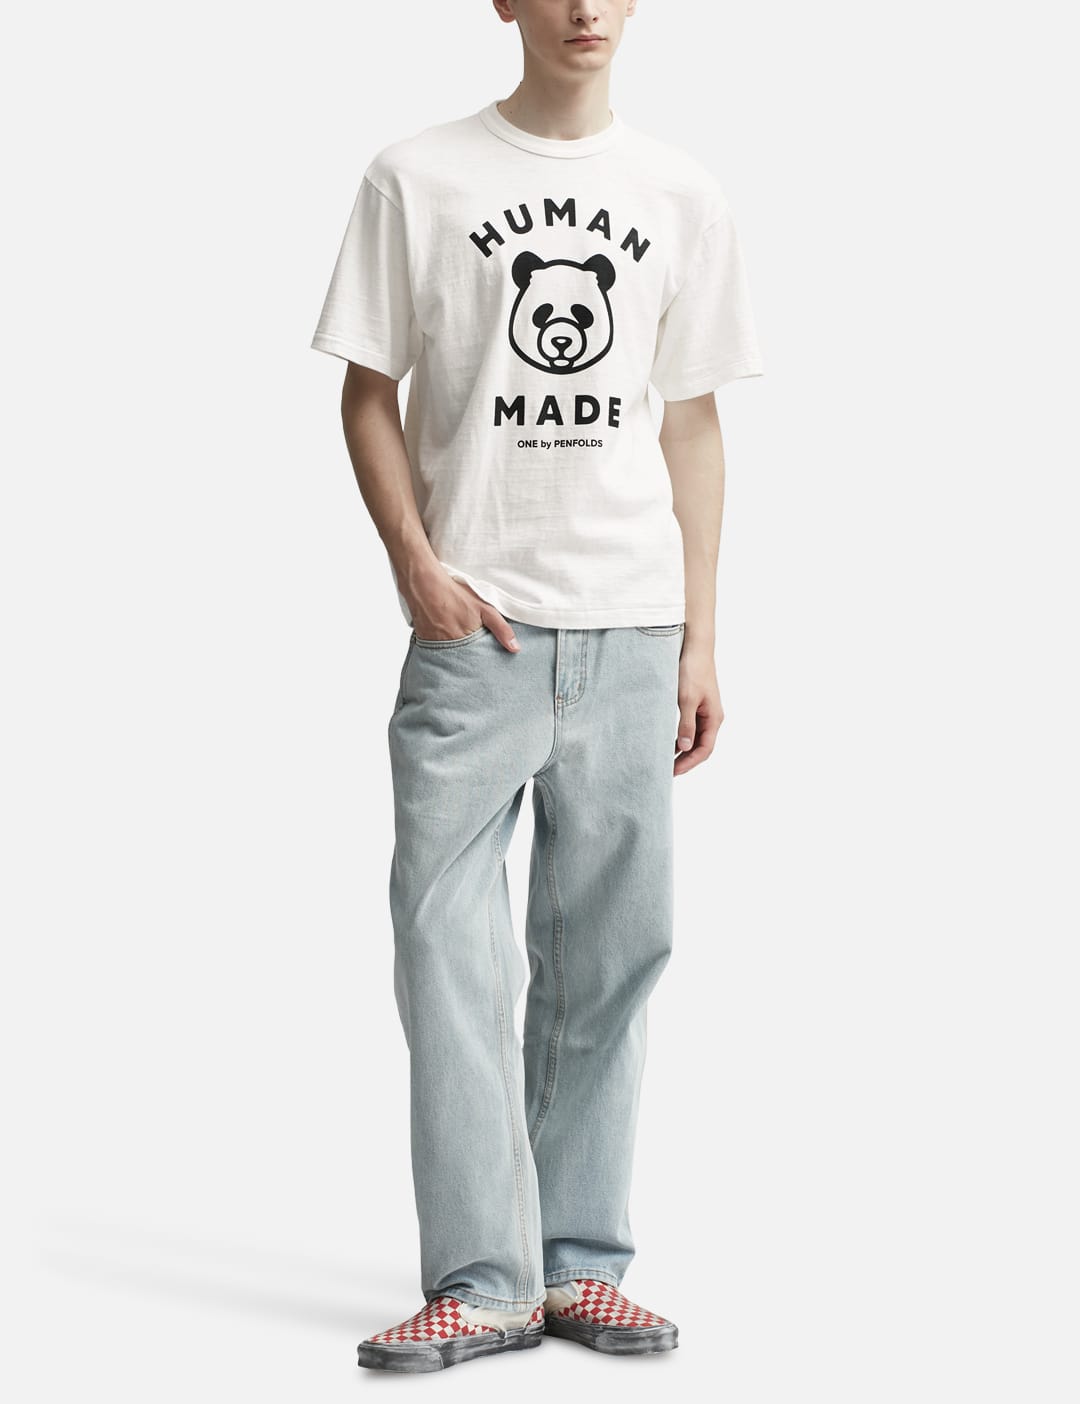 未使用 未開封 HUMAN MADE ONE BY PENFOLDS PANDA T-SHIRT Tシャツ